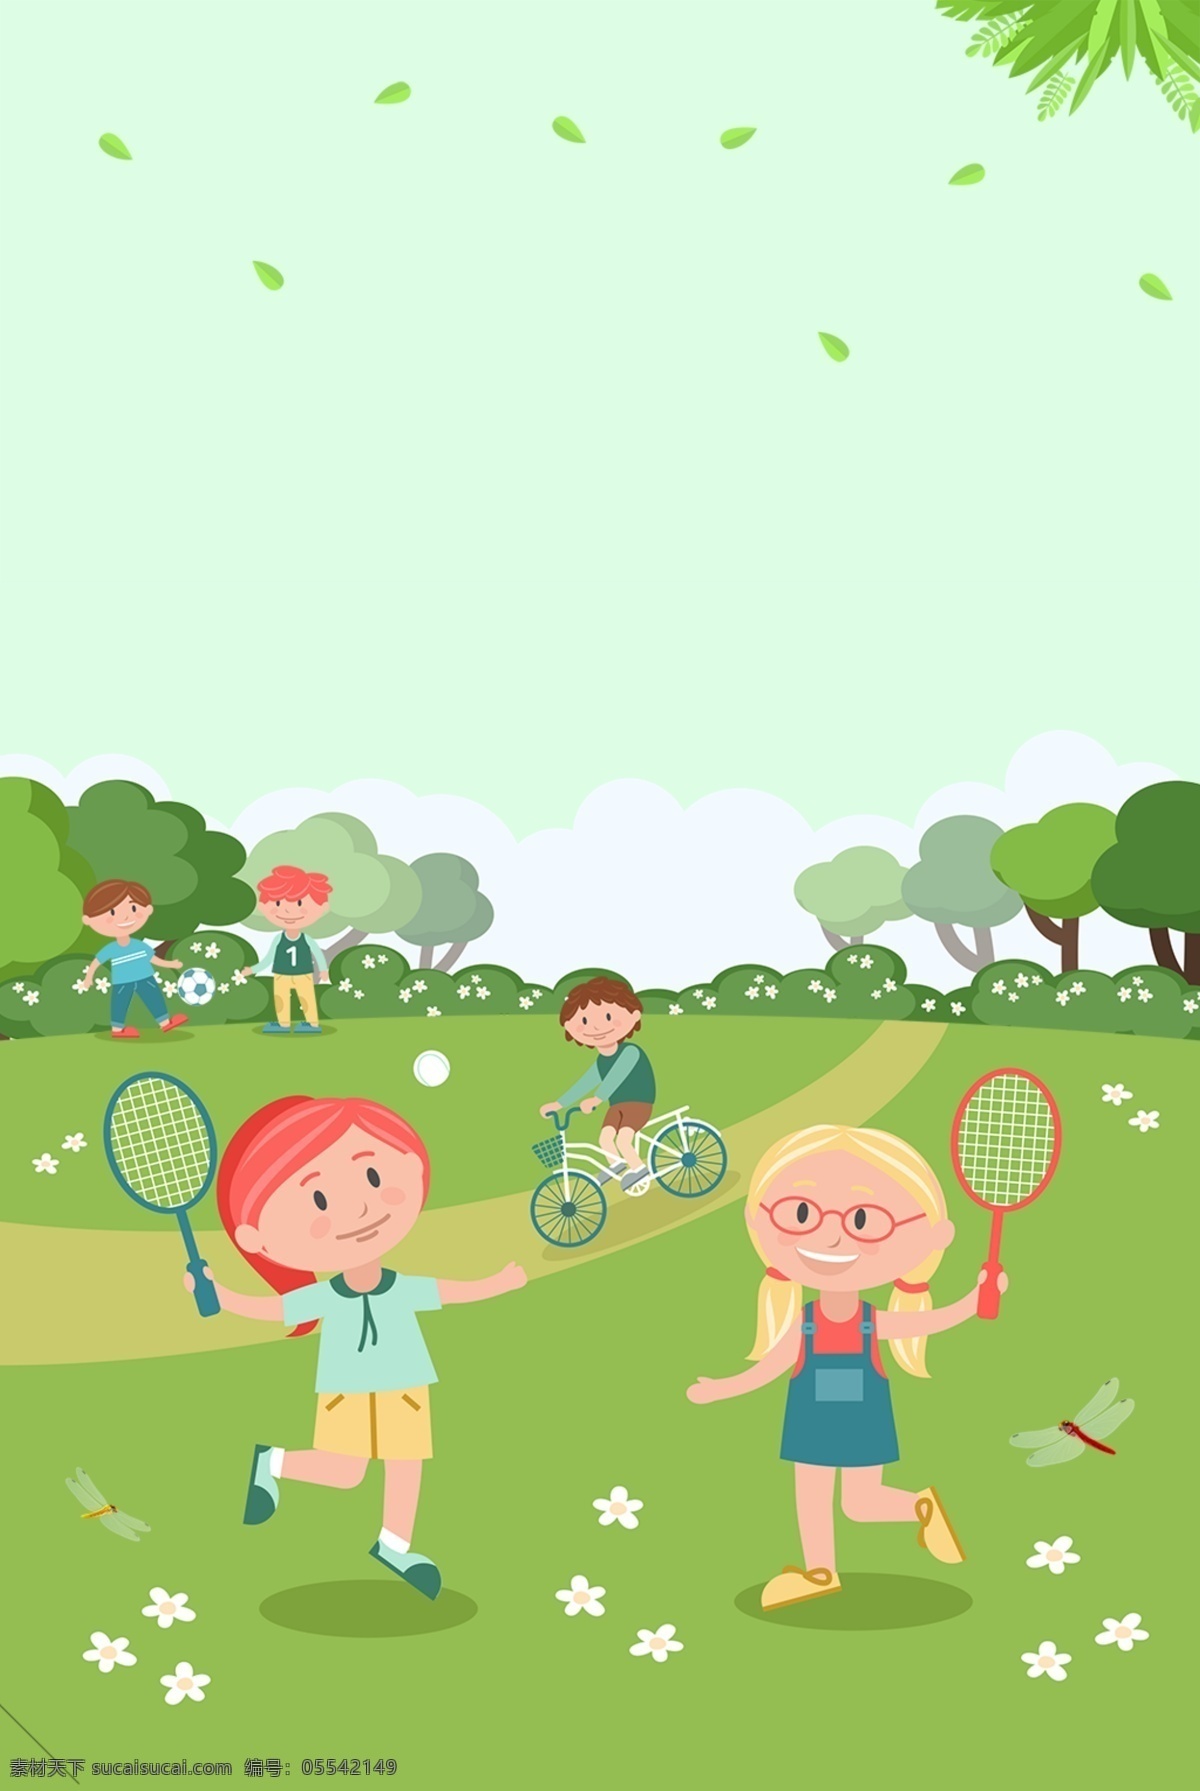 手绘 卡通 绿色 春天 踏青 背景 树木 花朵 郊游 儿童 玩耍 骑车 羽毛球 落叶